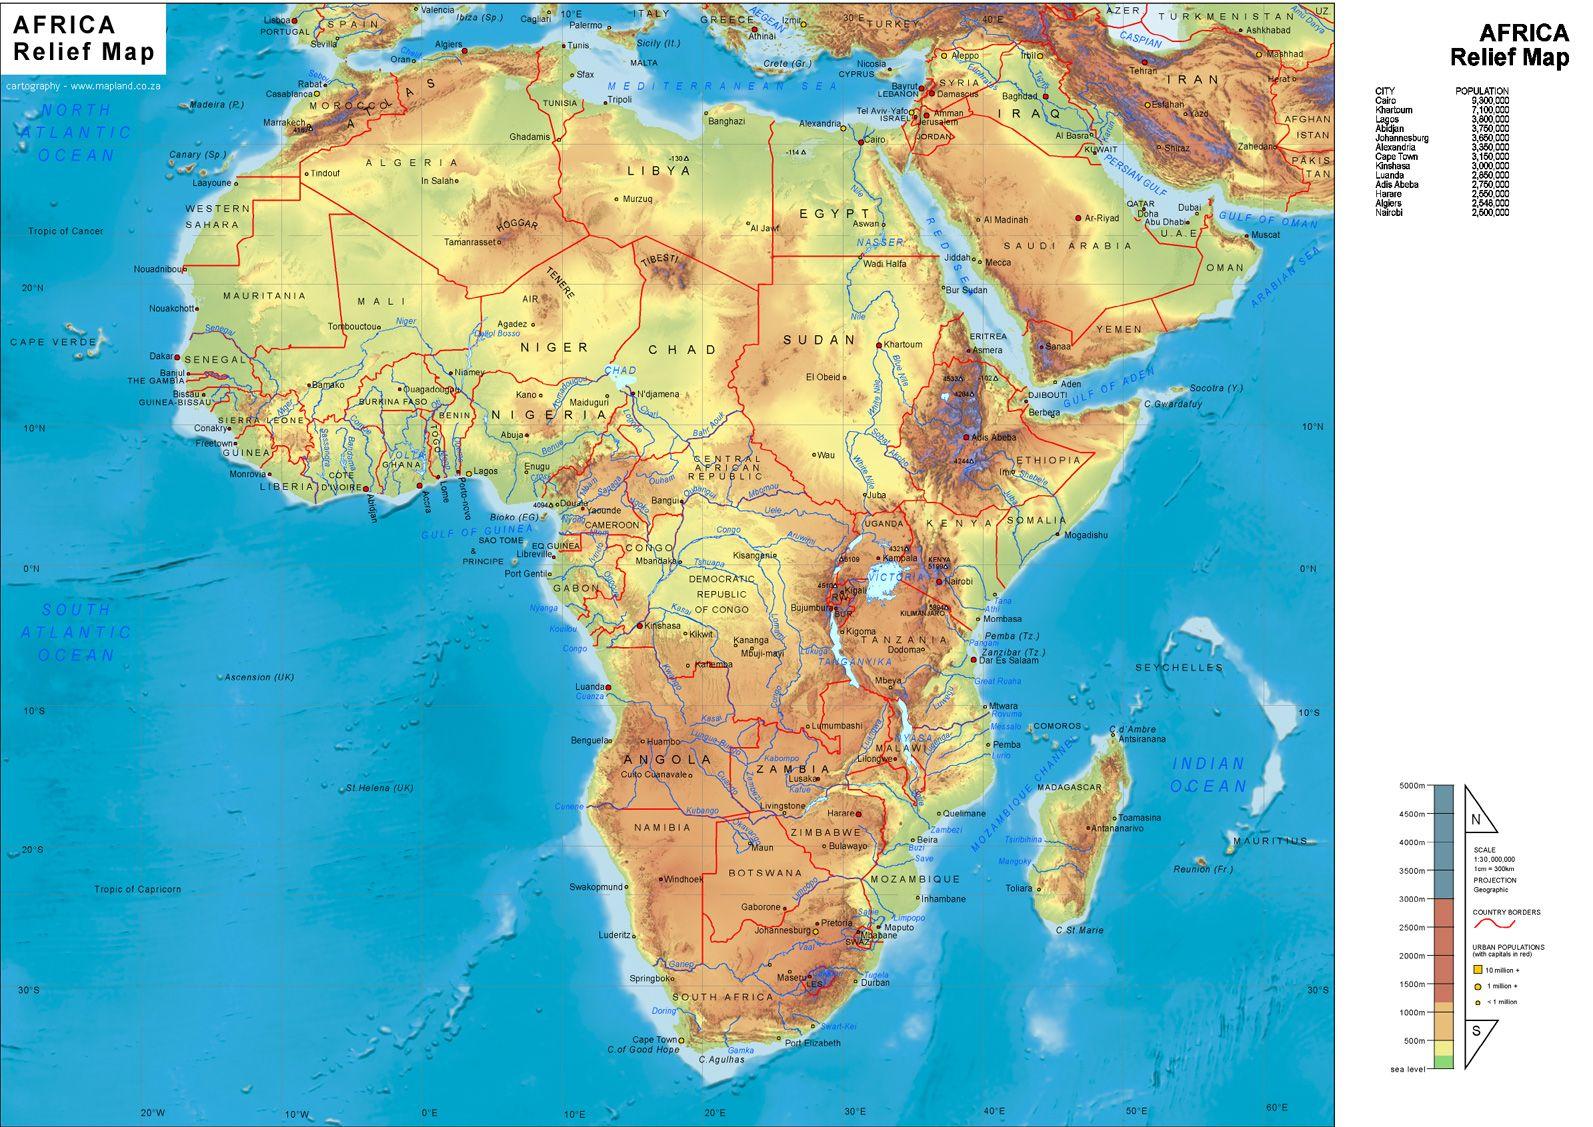 Атлас на карте африки. Река Нил на карте Африки. Карта рельефа Африки. Река шари на карте Африки. Карта Африки река Нил на карте.